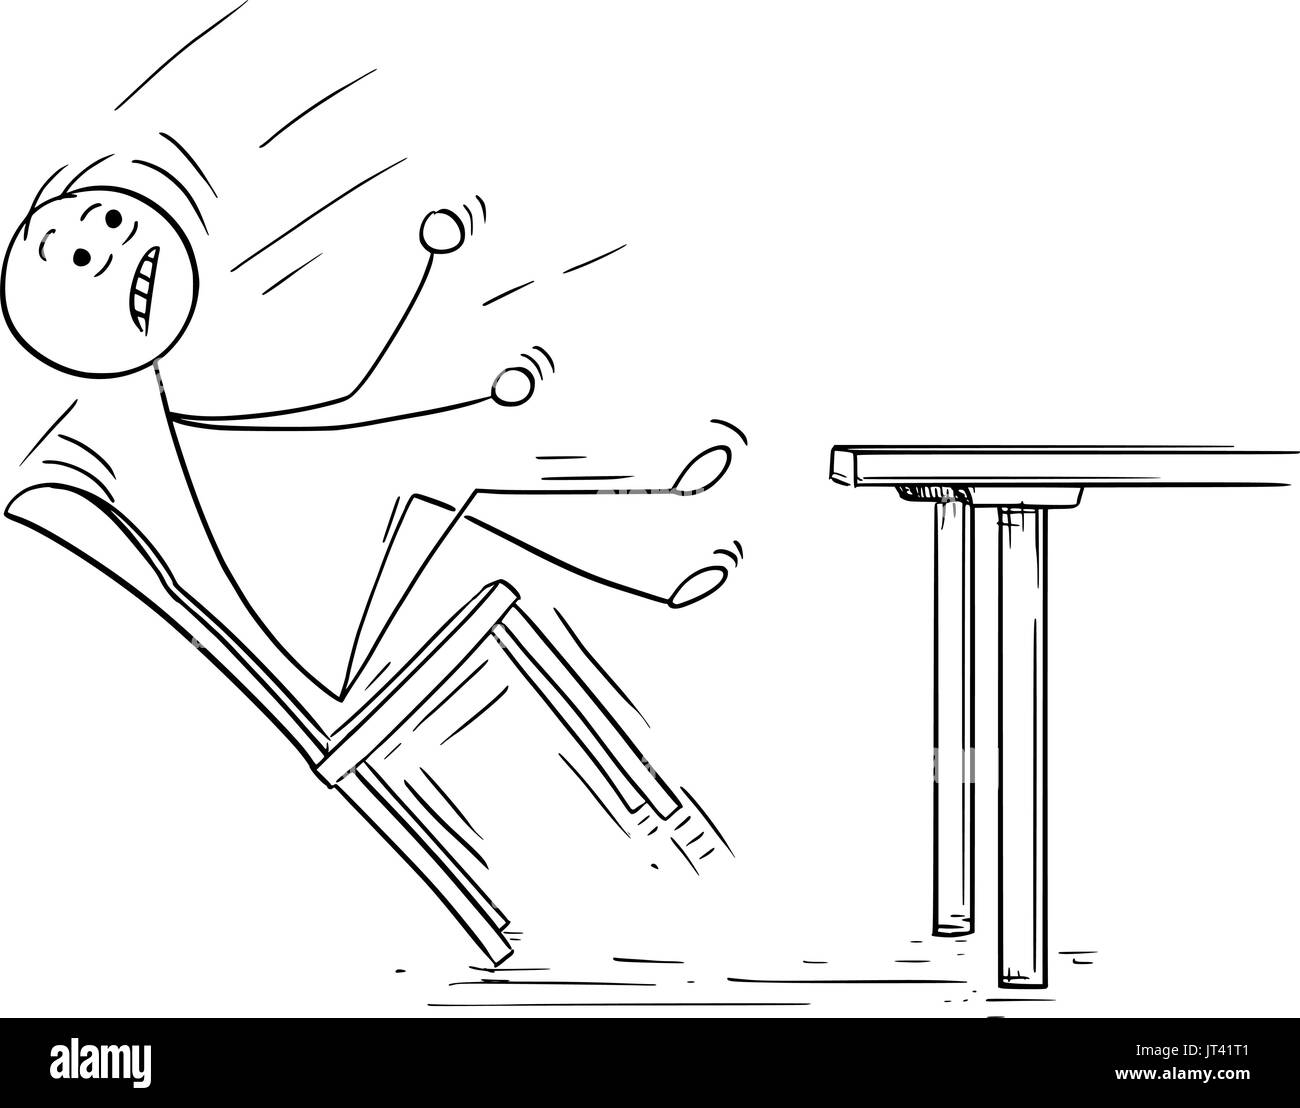 Cartoon-Vektor-Illustration von Strichmännchen Schaukeln und mit Stuhl vom Tisch fallen. Stock Vektor